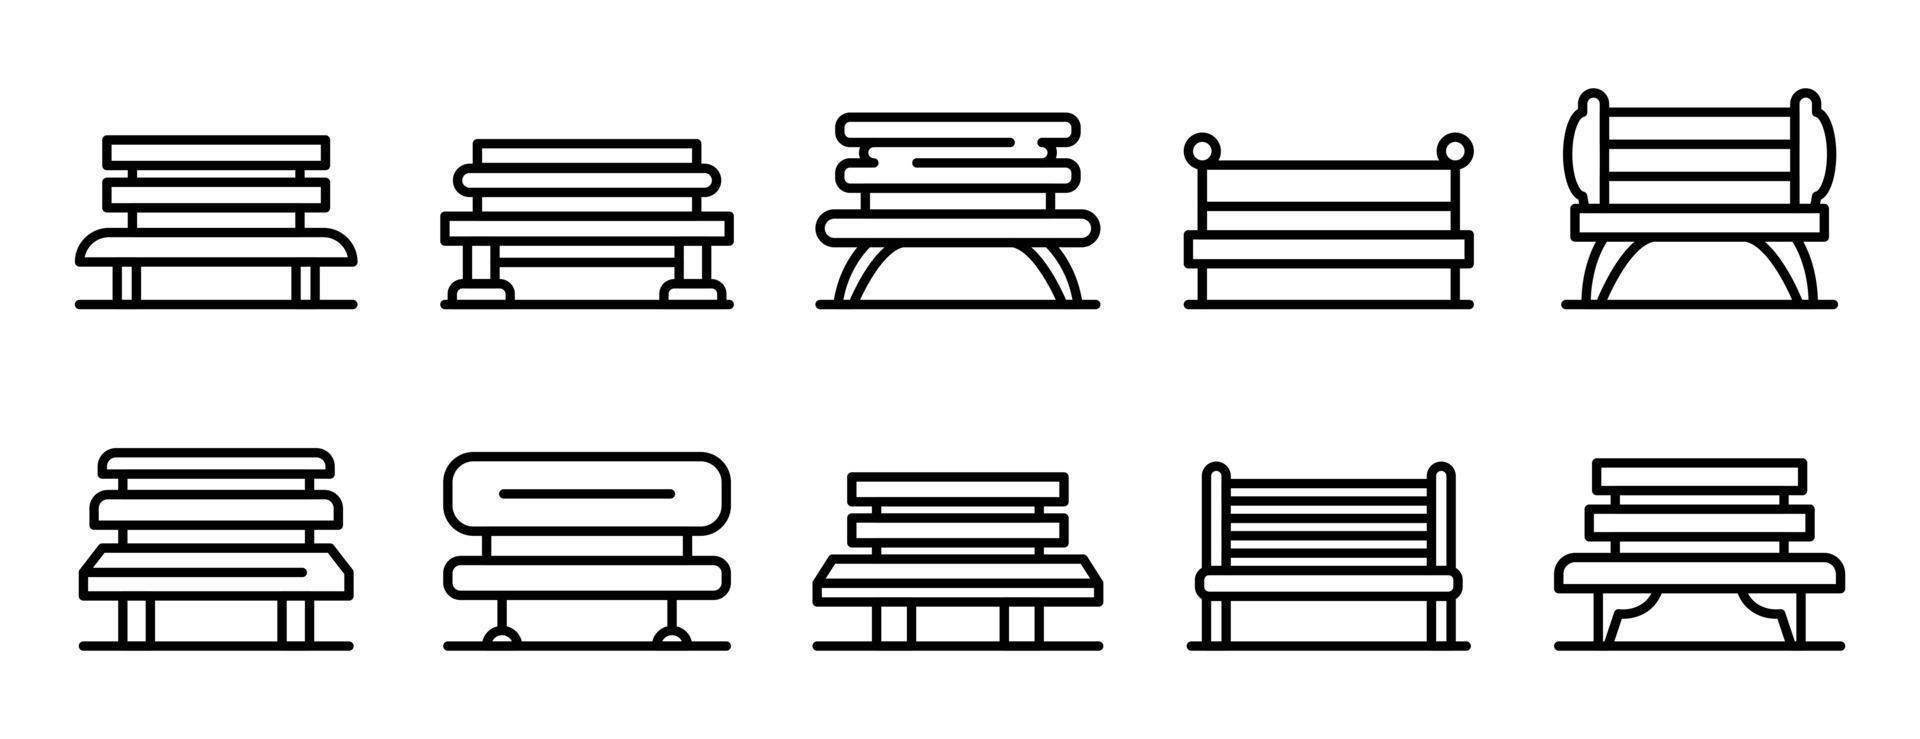 conjunto de iconos de banco de parque, estilo de esquema vector